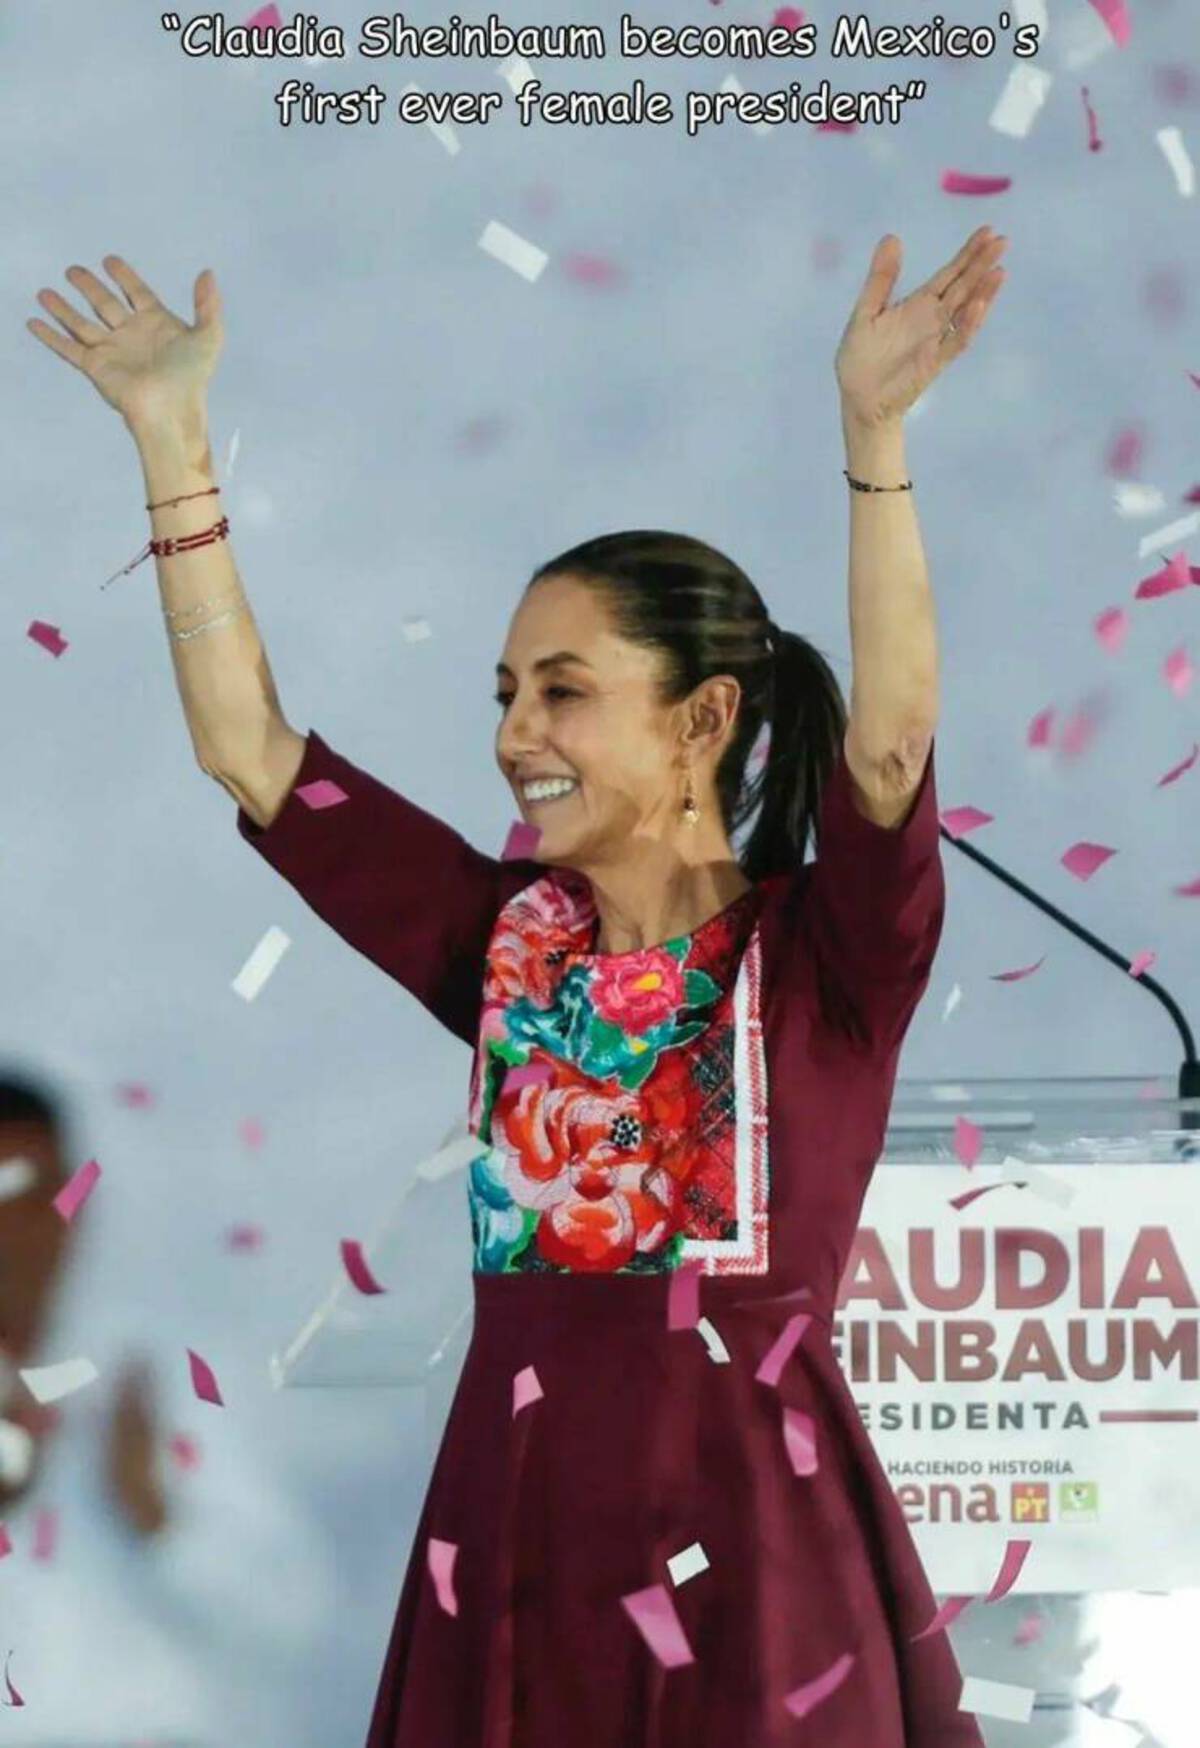 "Claudia Sheinbaum becomes Mexico's first ever female president" Audia Inbaum Esidenta Haciendo Historia ena Pt